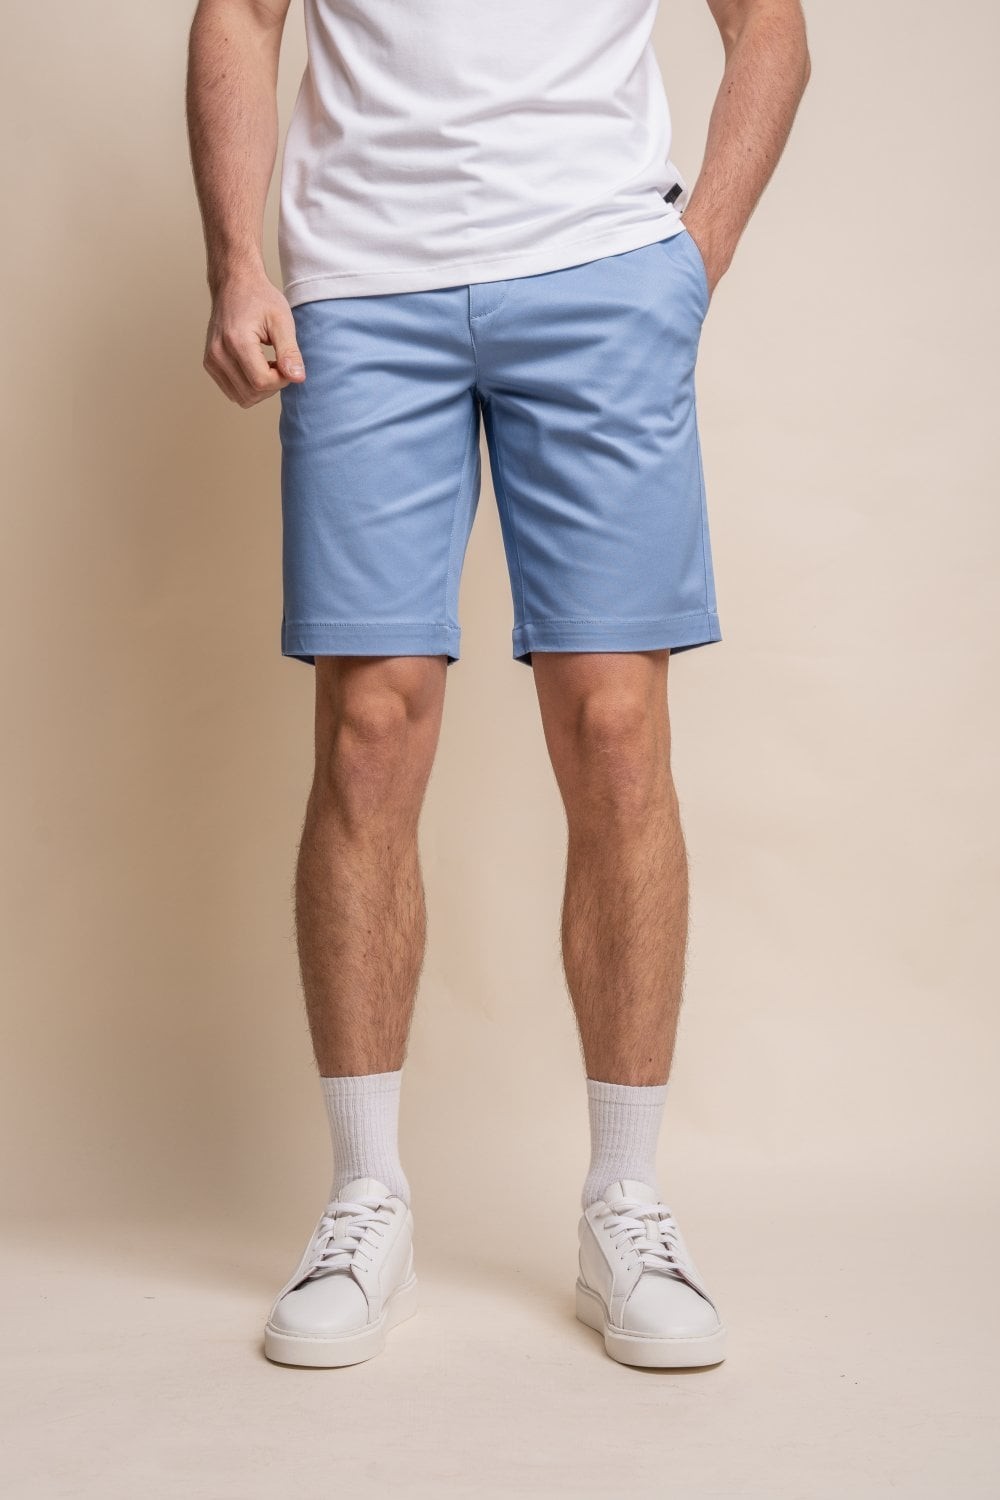 Shorts chino décontractés en coton pour hommes - DAKOTA - Bleu ciel